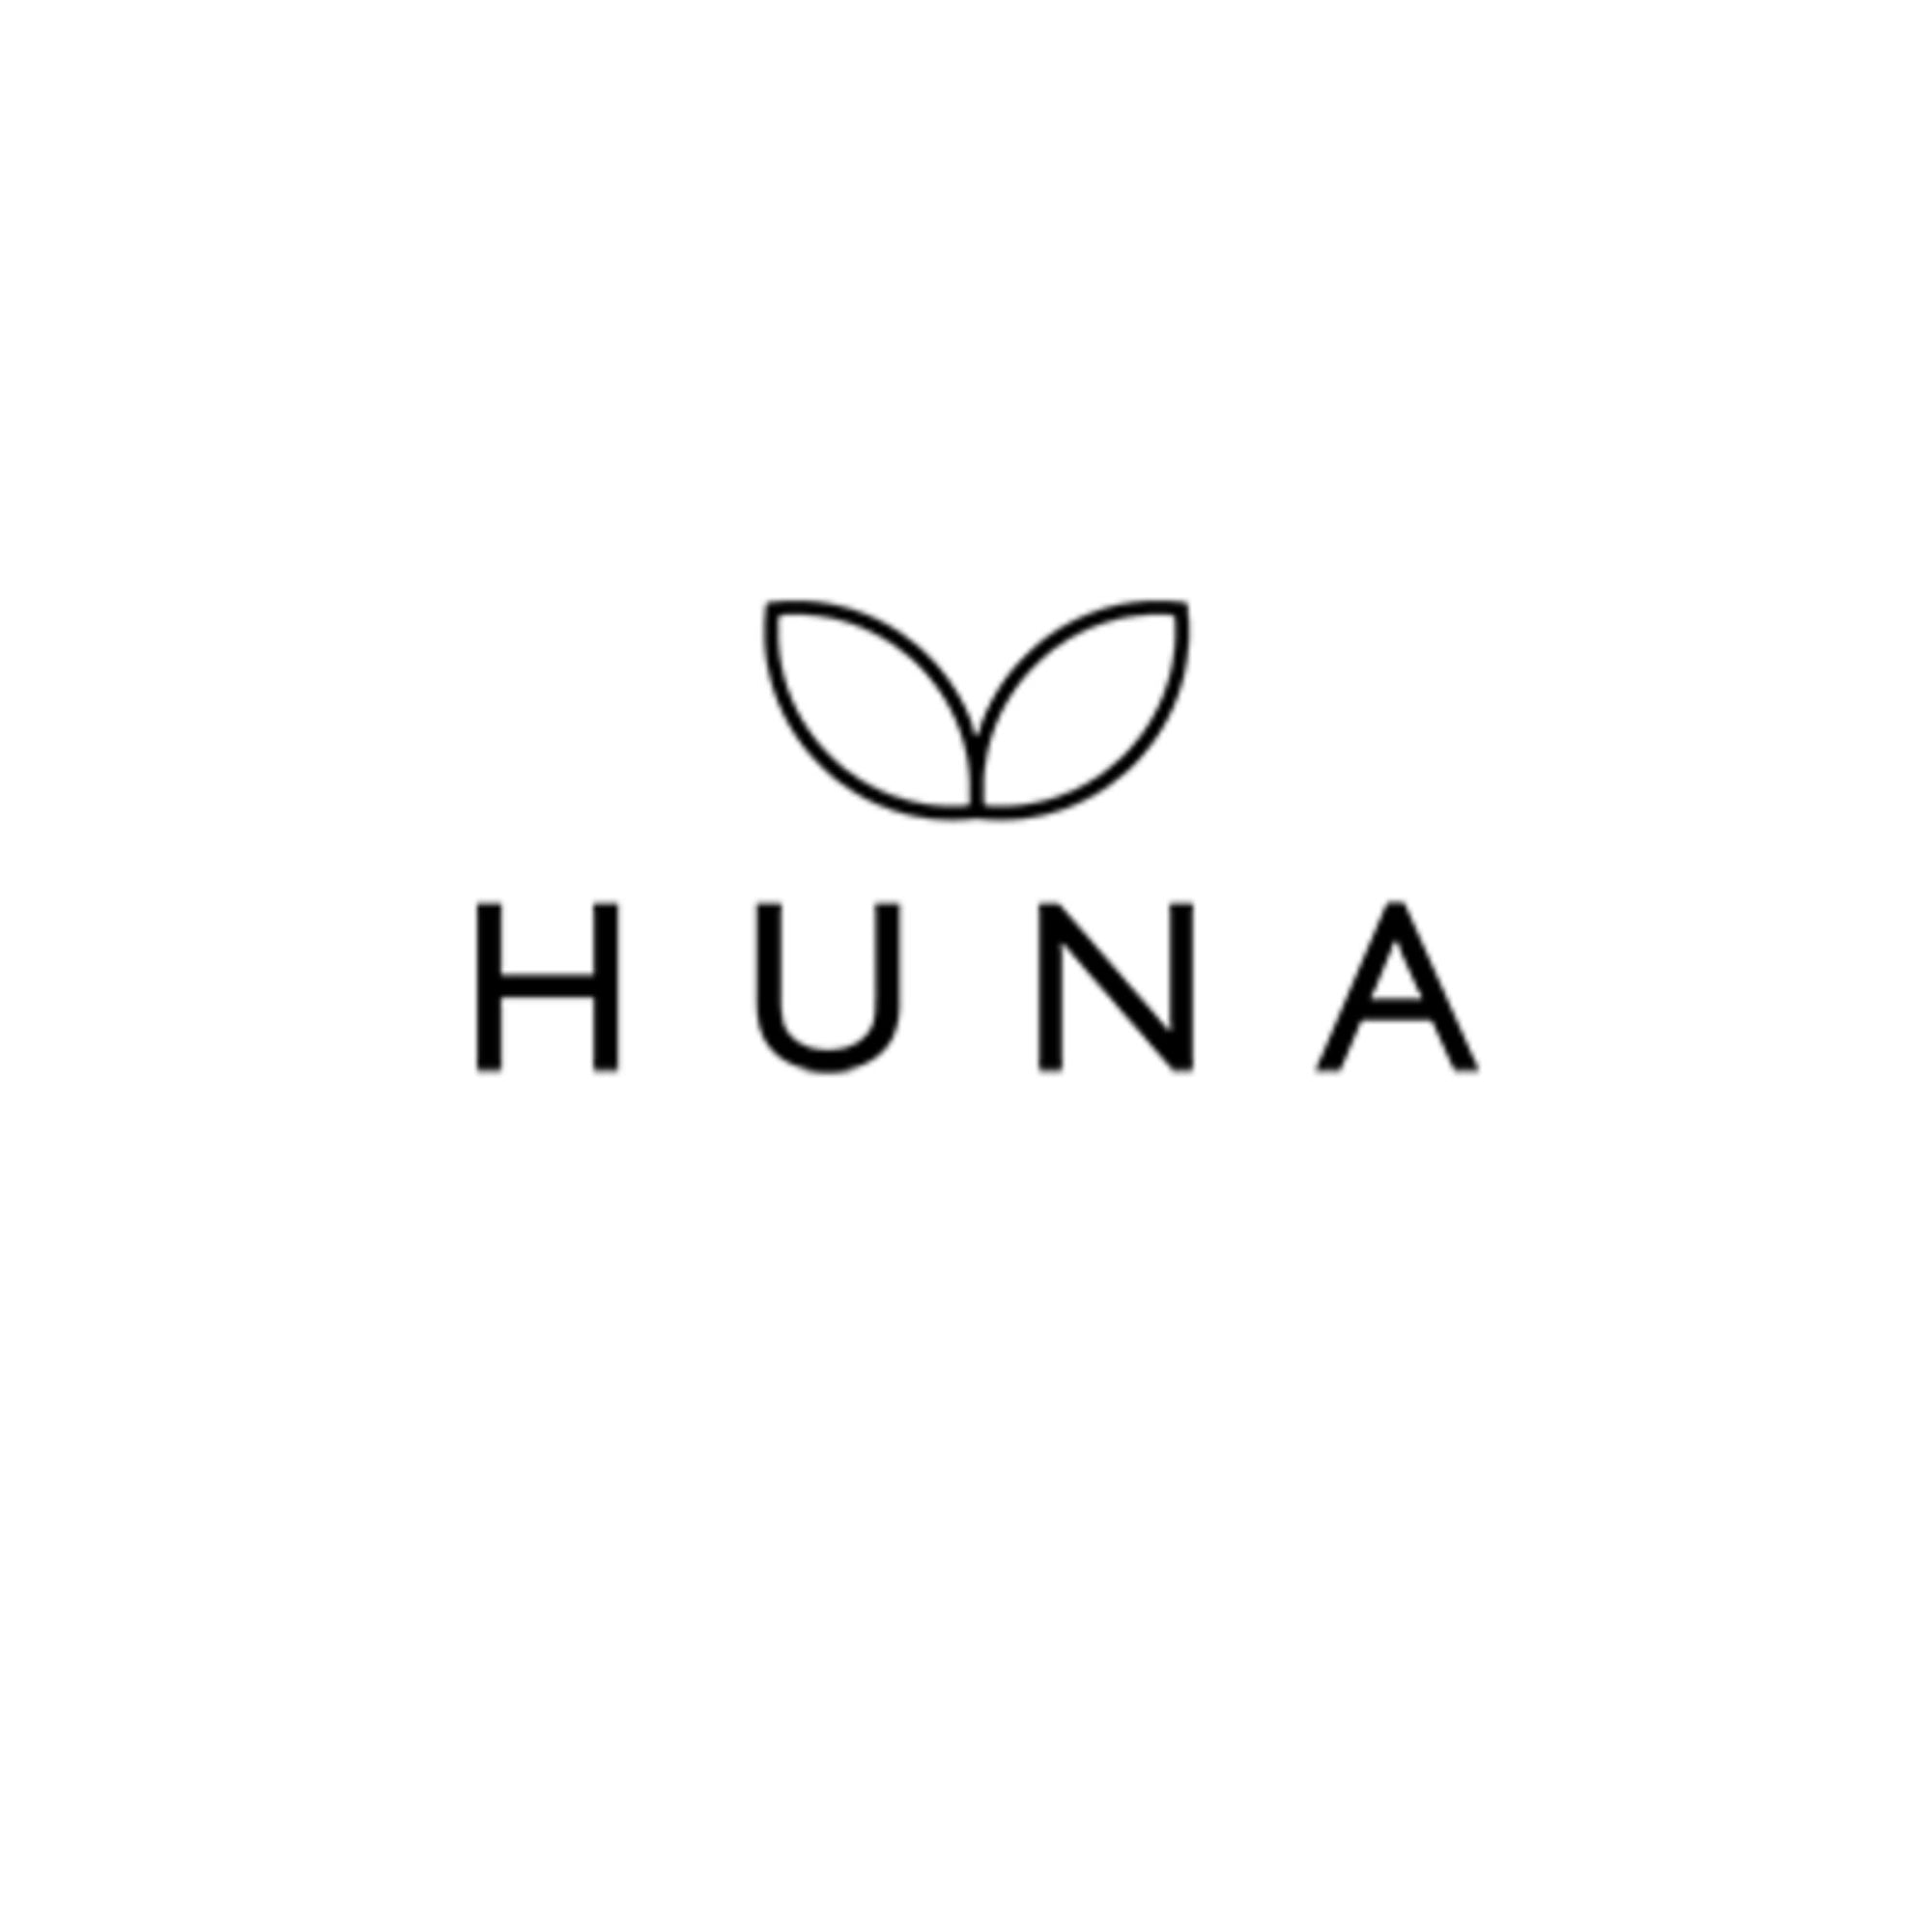 HUNA Skin - ORESTA clean beauty simplified